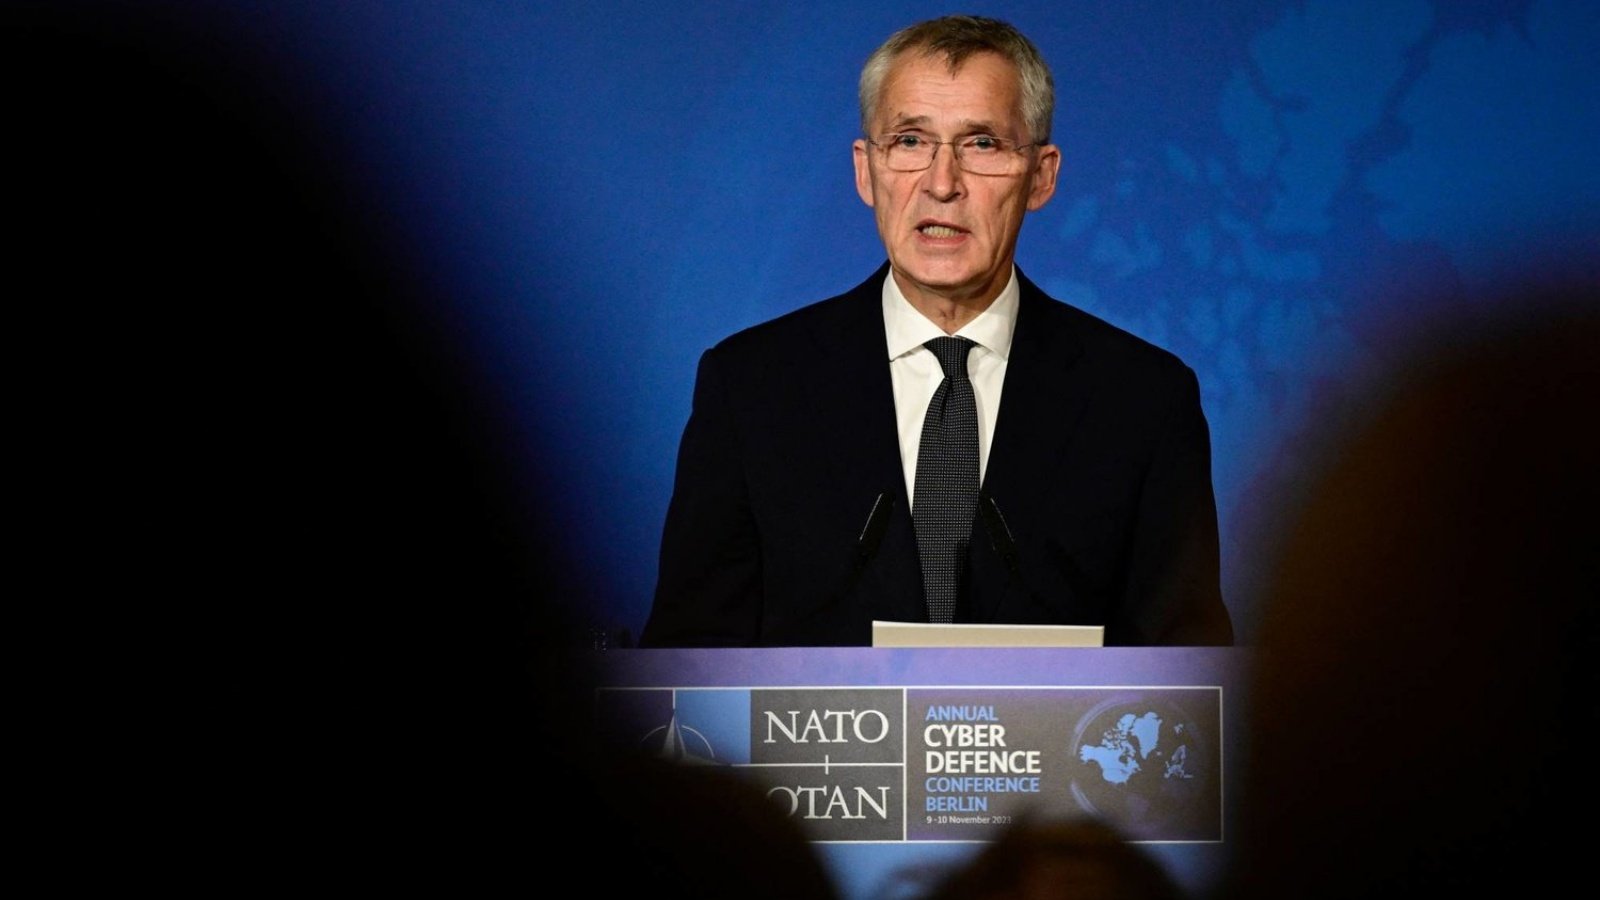 الأمين العام لحلف شمال الأطلسي (الناتو)، ينس ستولتنبرغ